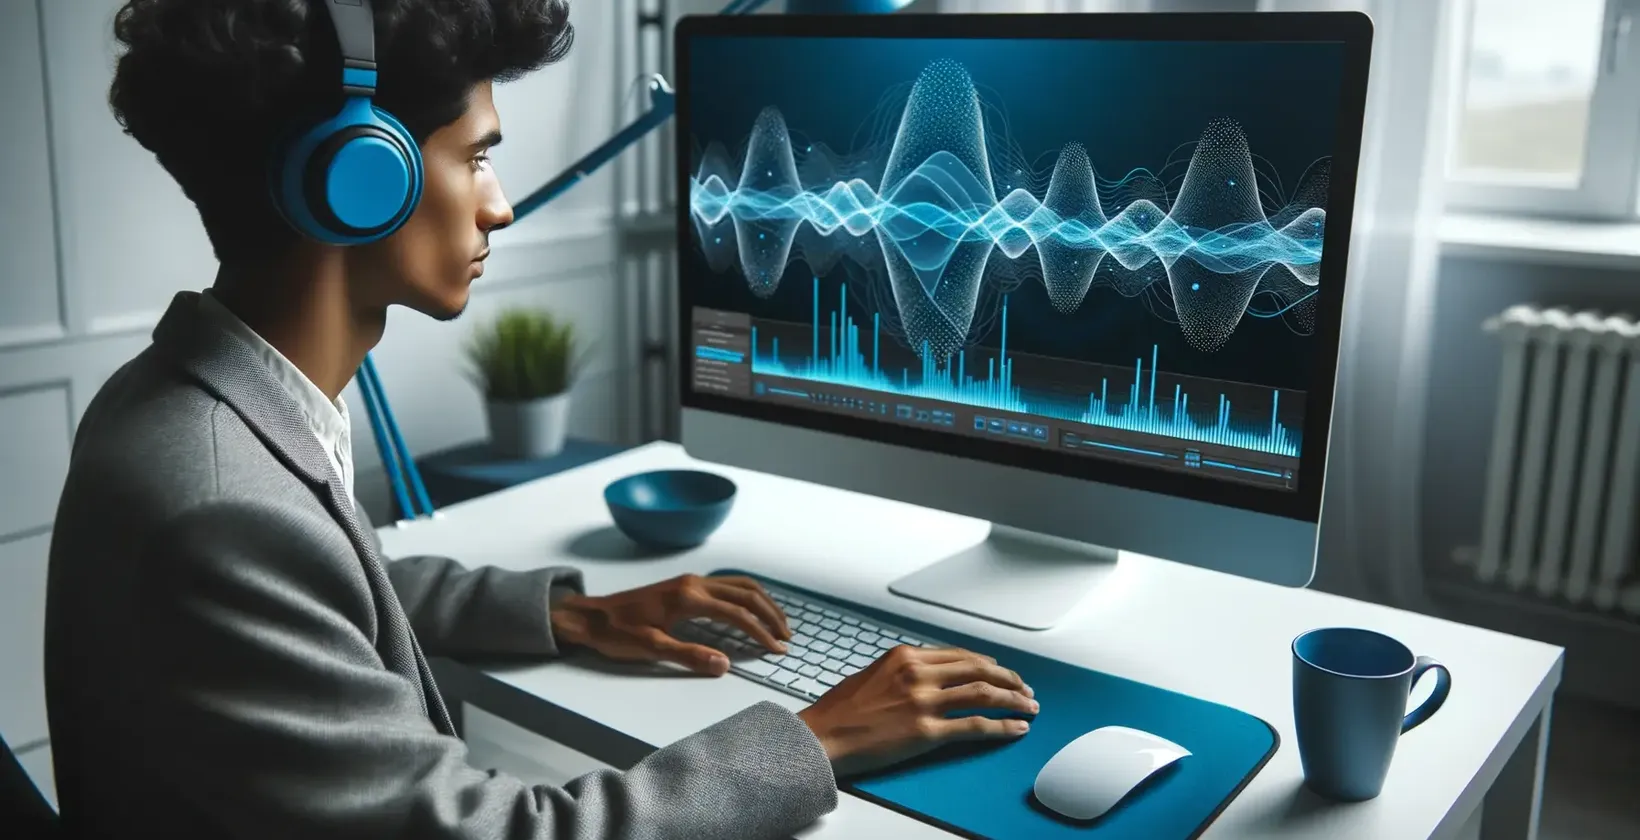 En ung person med hovedtelefoner analyserer intenst lydbølger på en computerskærm.